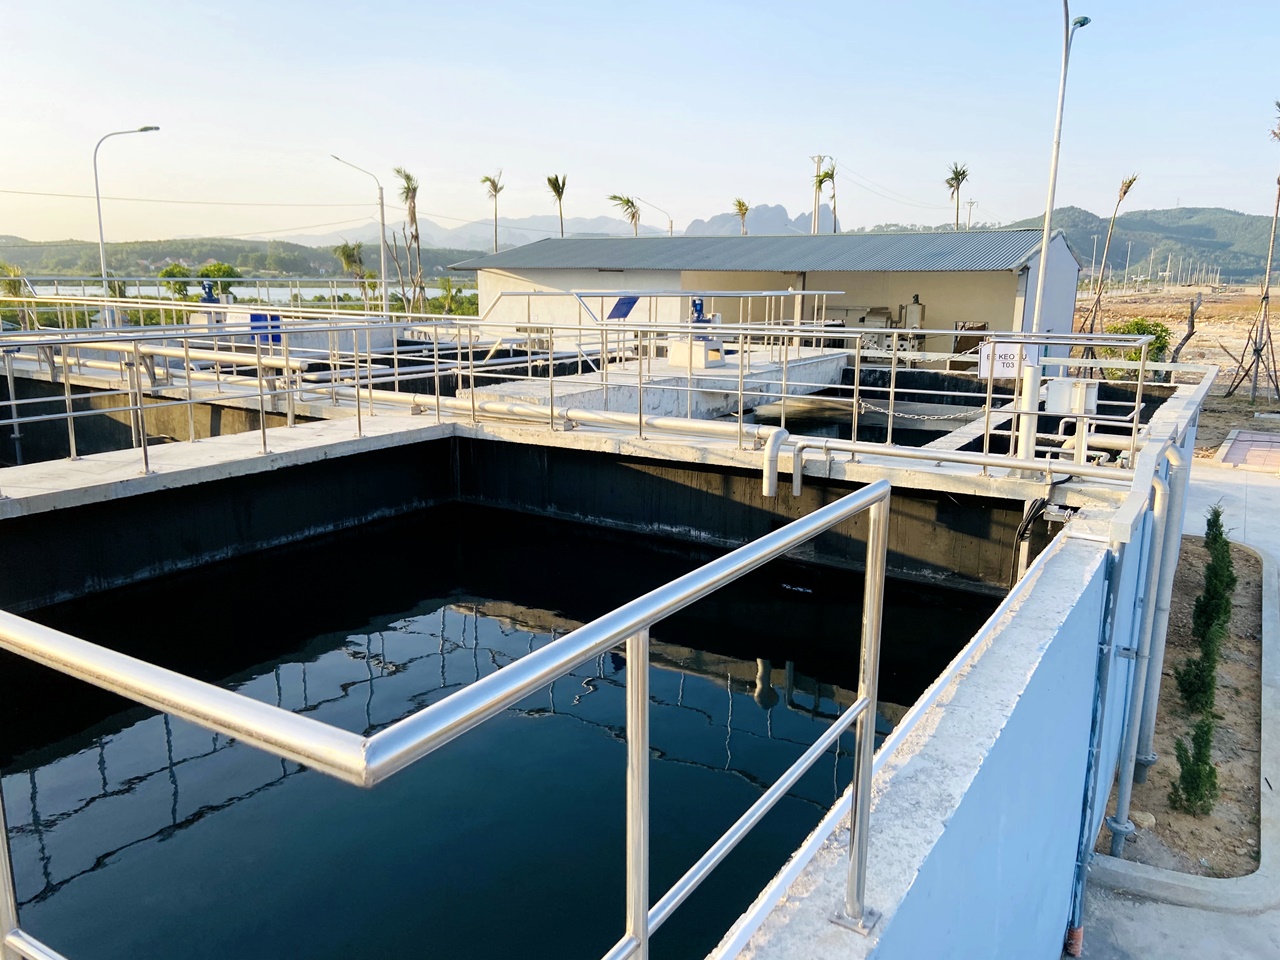 Trạm xử lý nước thải tập trung theo công nghệ Châu Âu với công suất 950m3/ngày đêm.